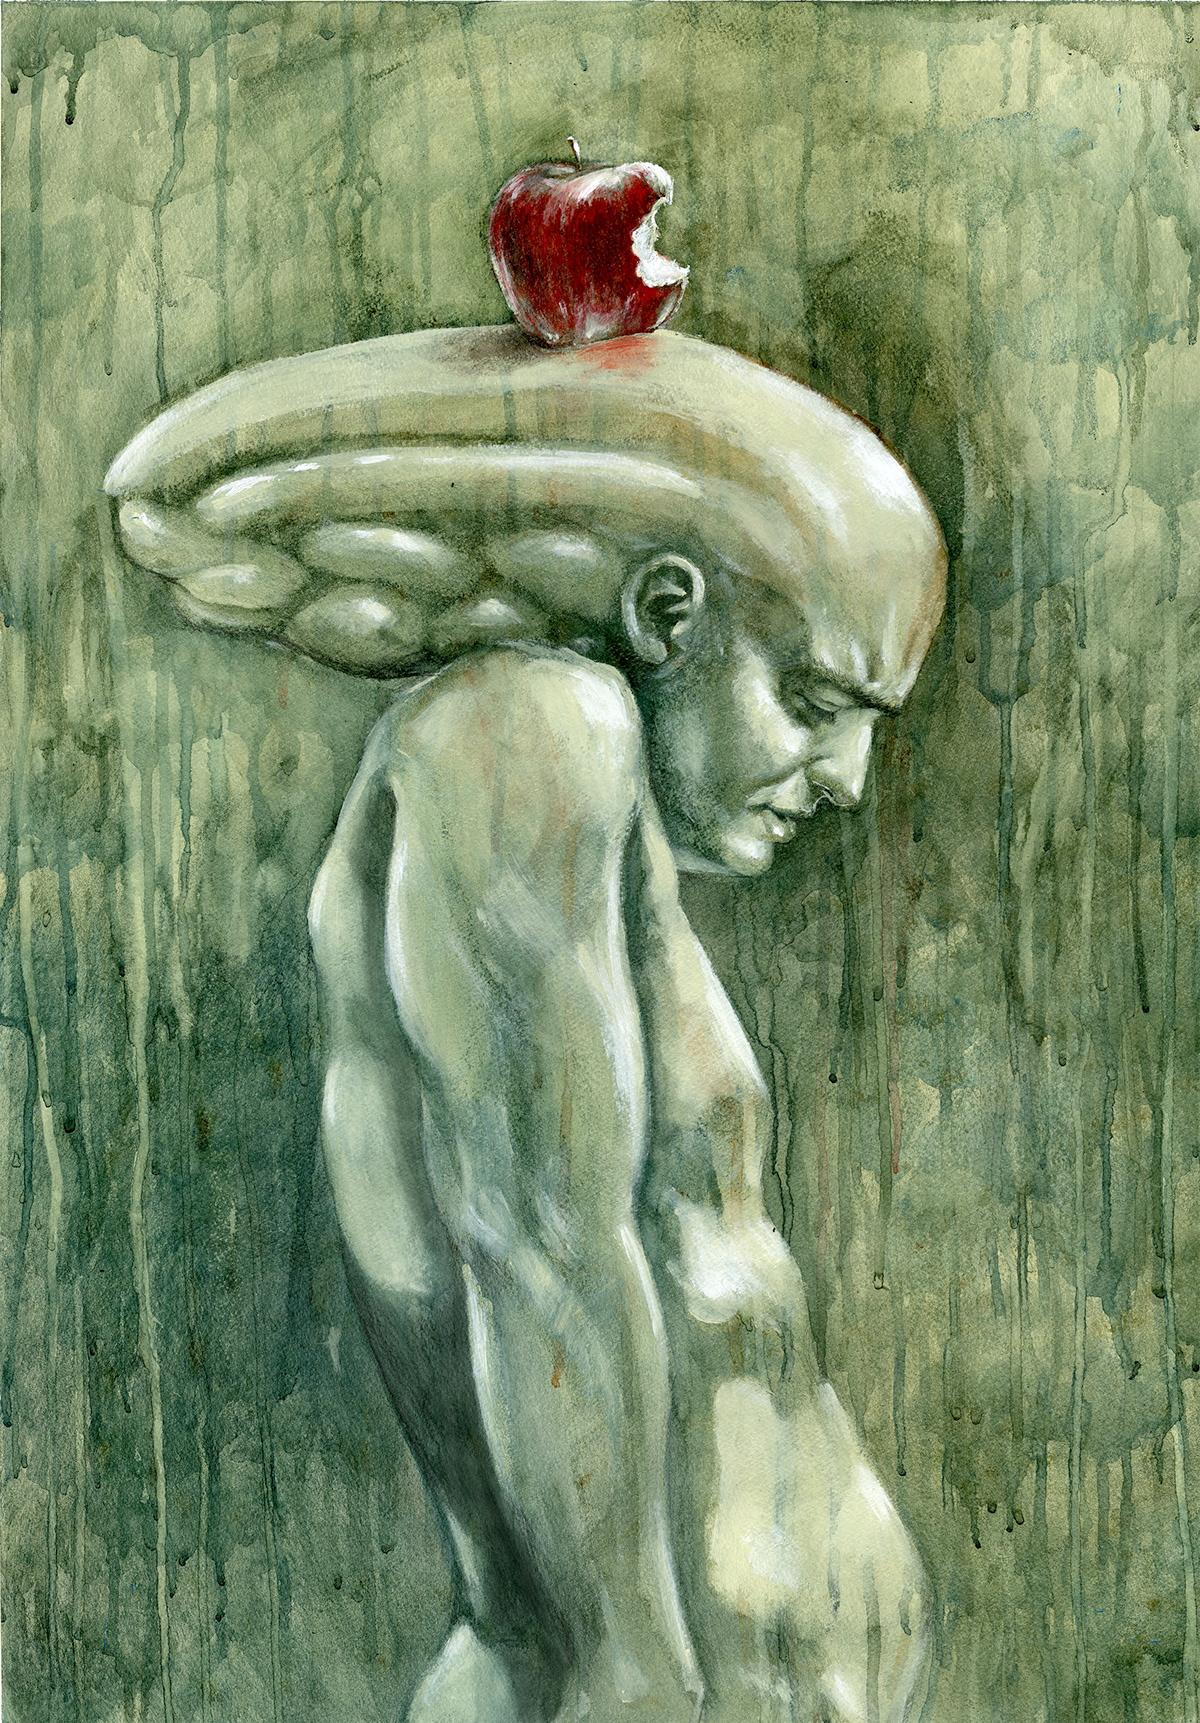 Adam Eve genesis alien Giger nude apple jason scalfano dark conceptual